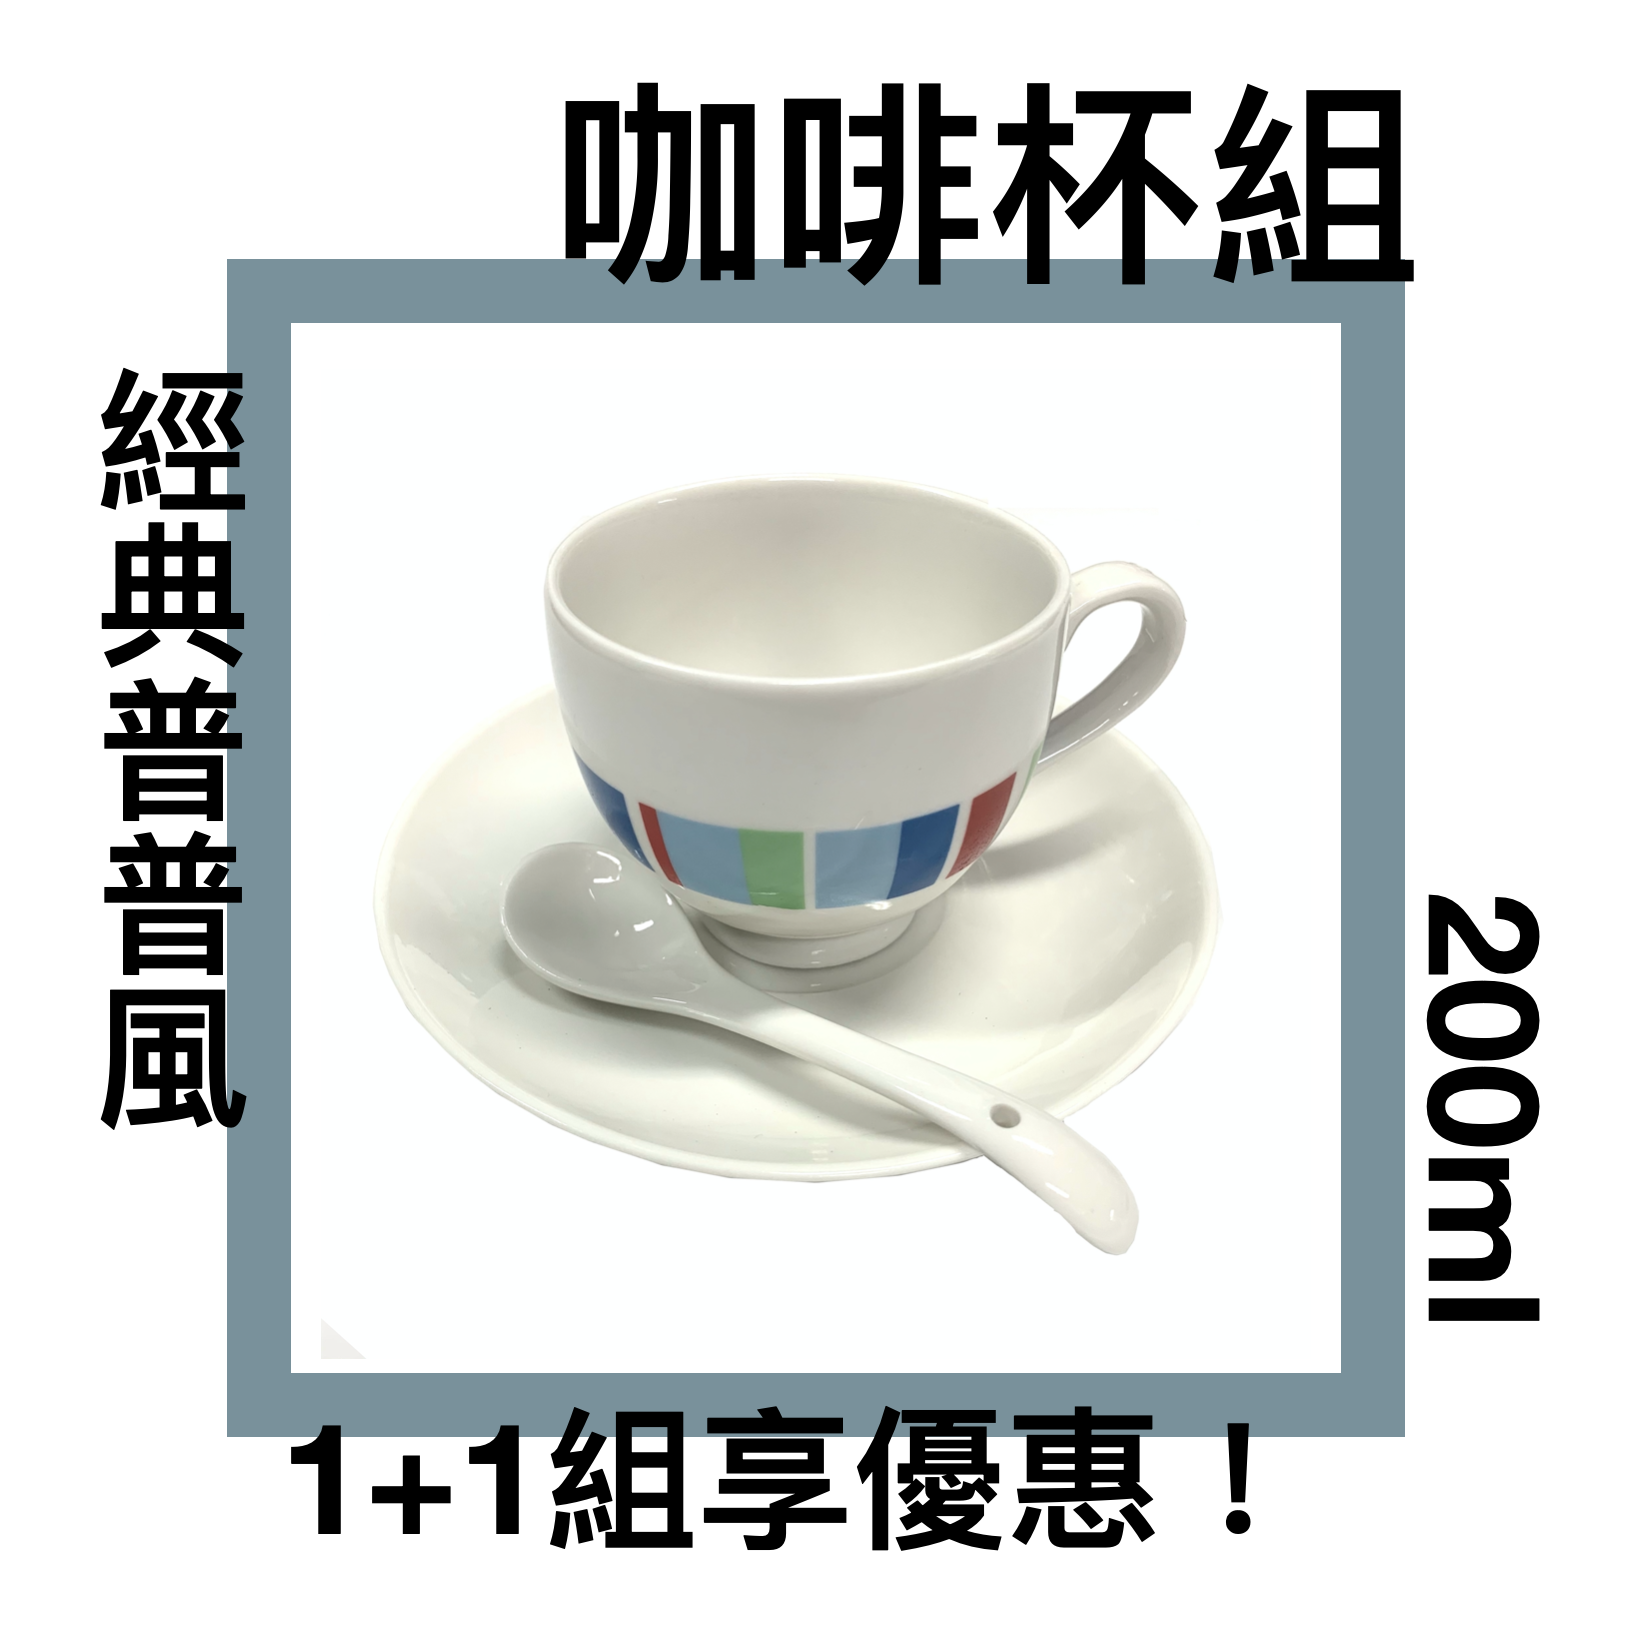 ■川鈺■ 咖啡杯 200ml 普普風 咖啡杯組 *1入